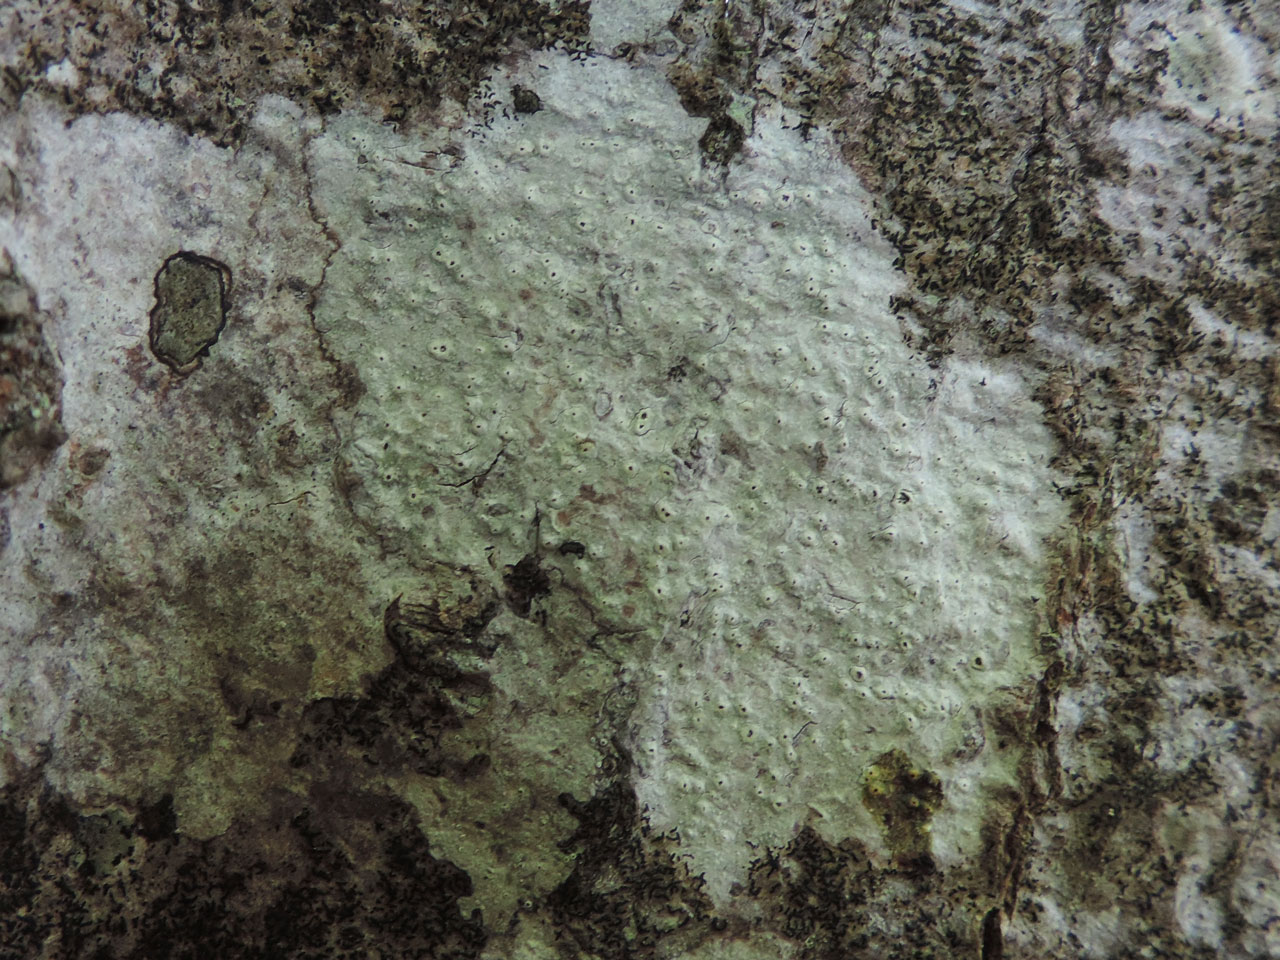 Pertusaria pustulata, thallus, Ebernoe Common